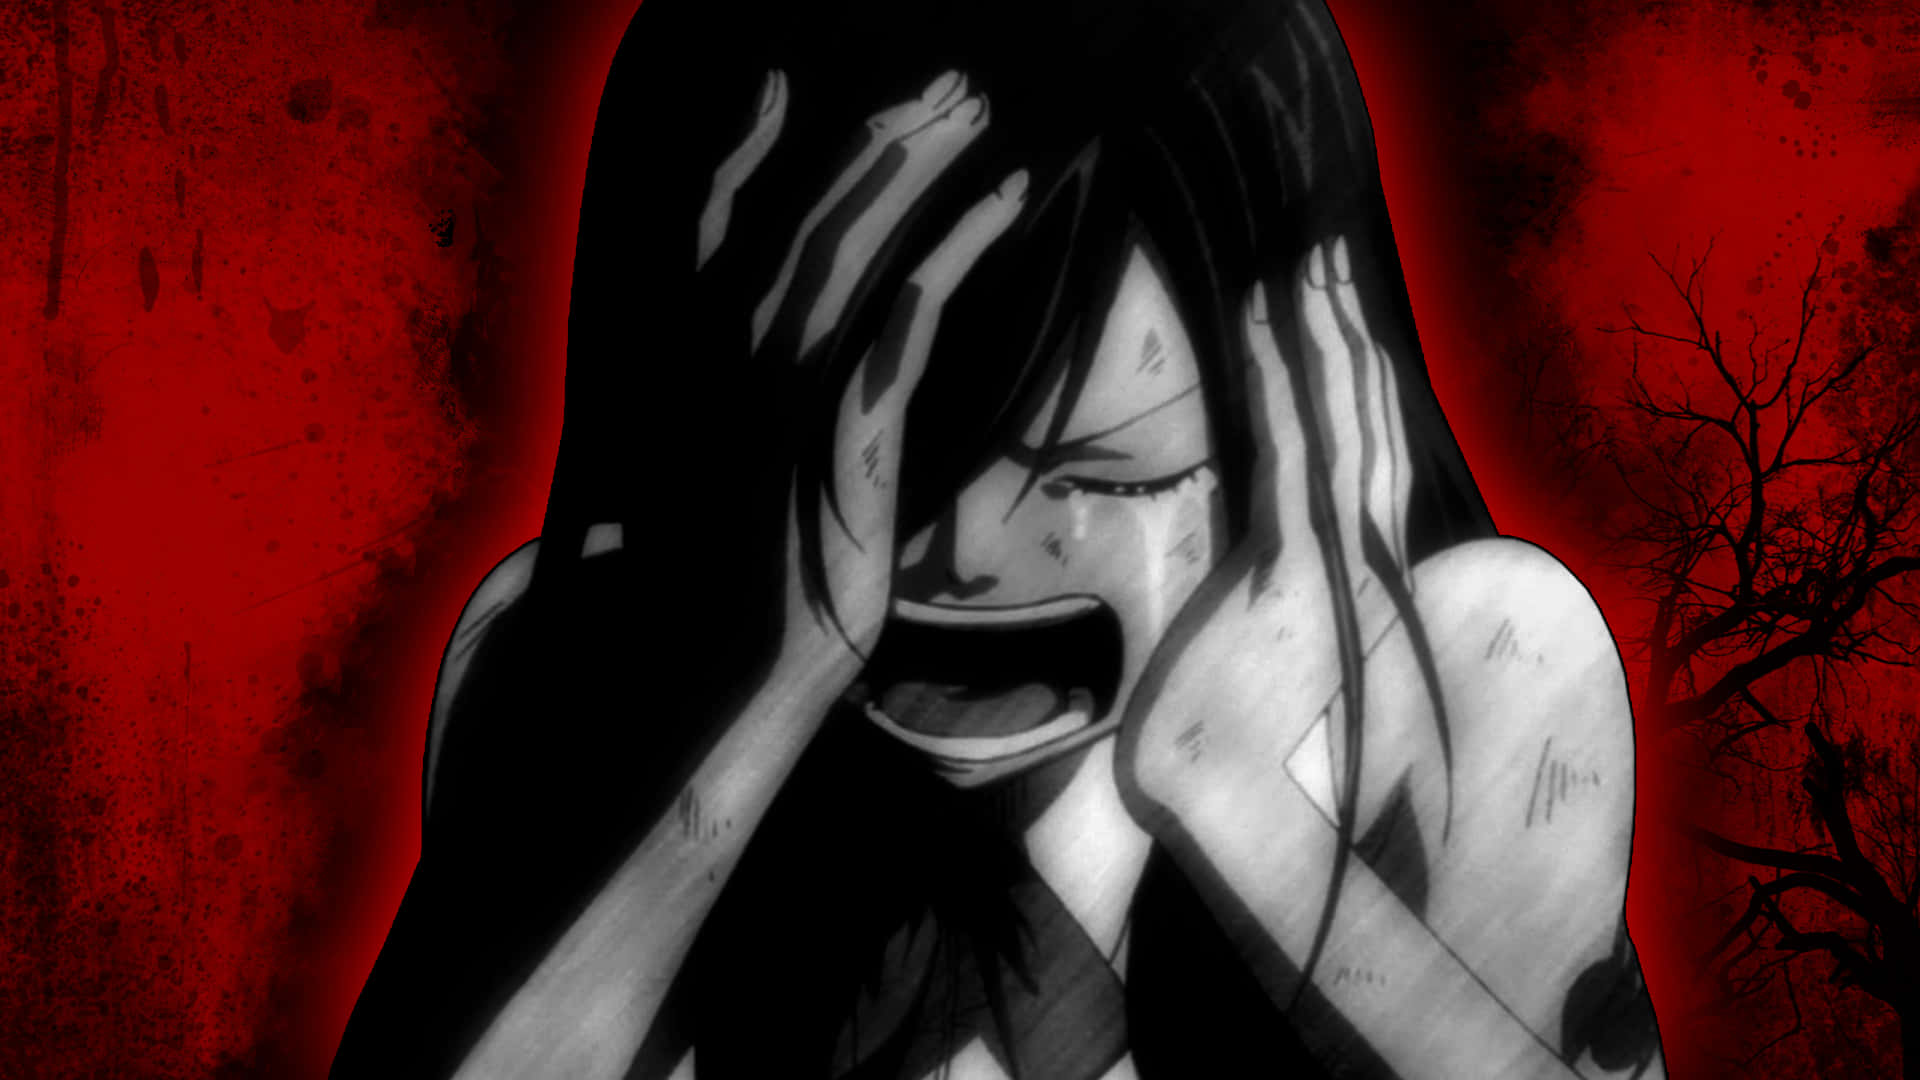 Depressed broken anime girl HD wallpapers | Pxfuel